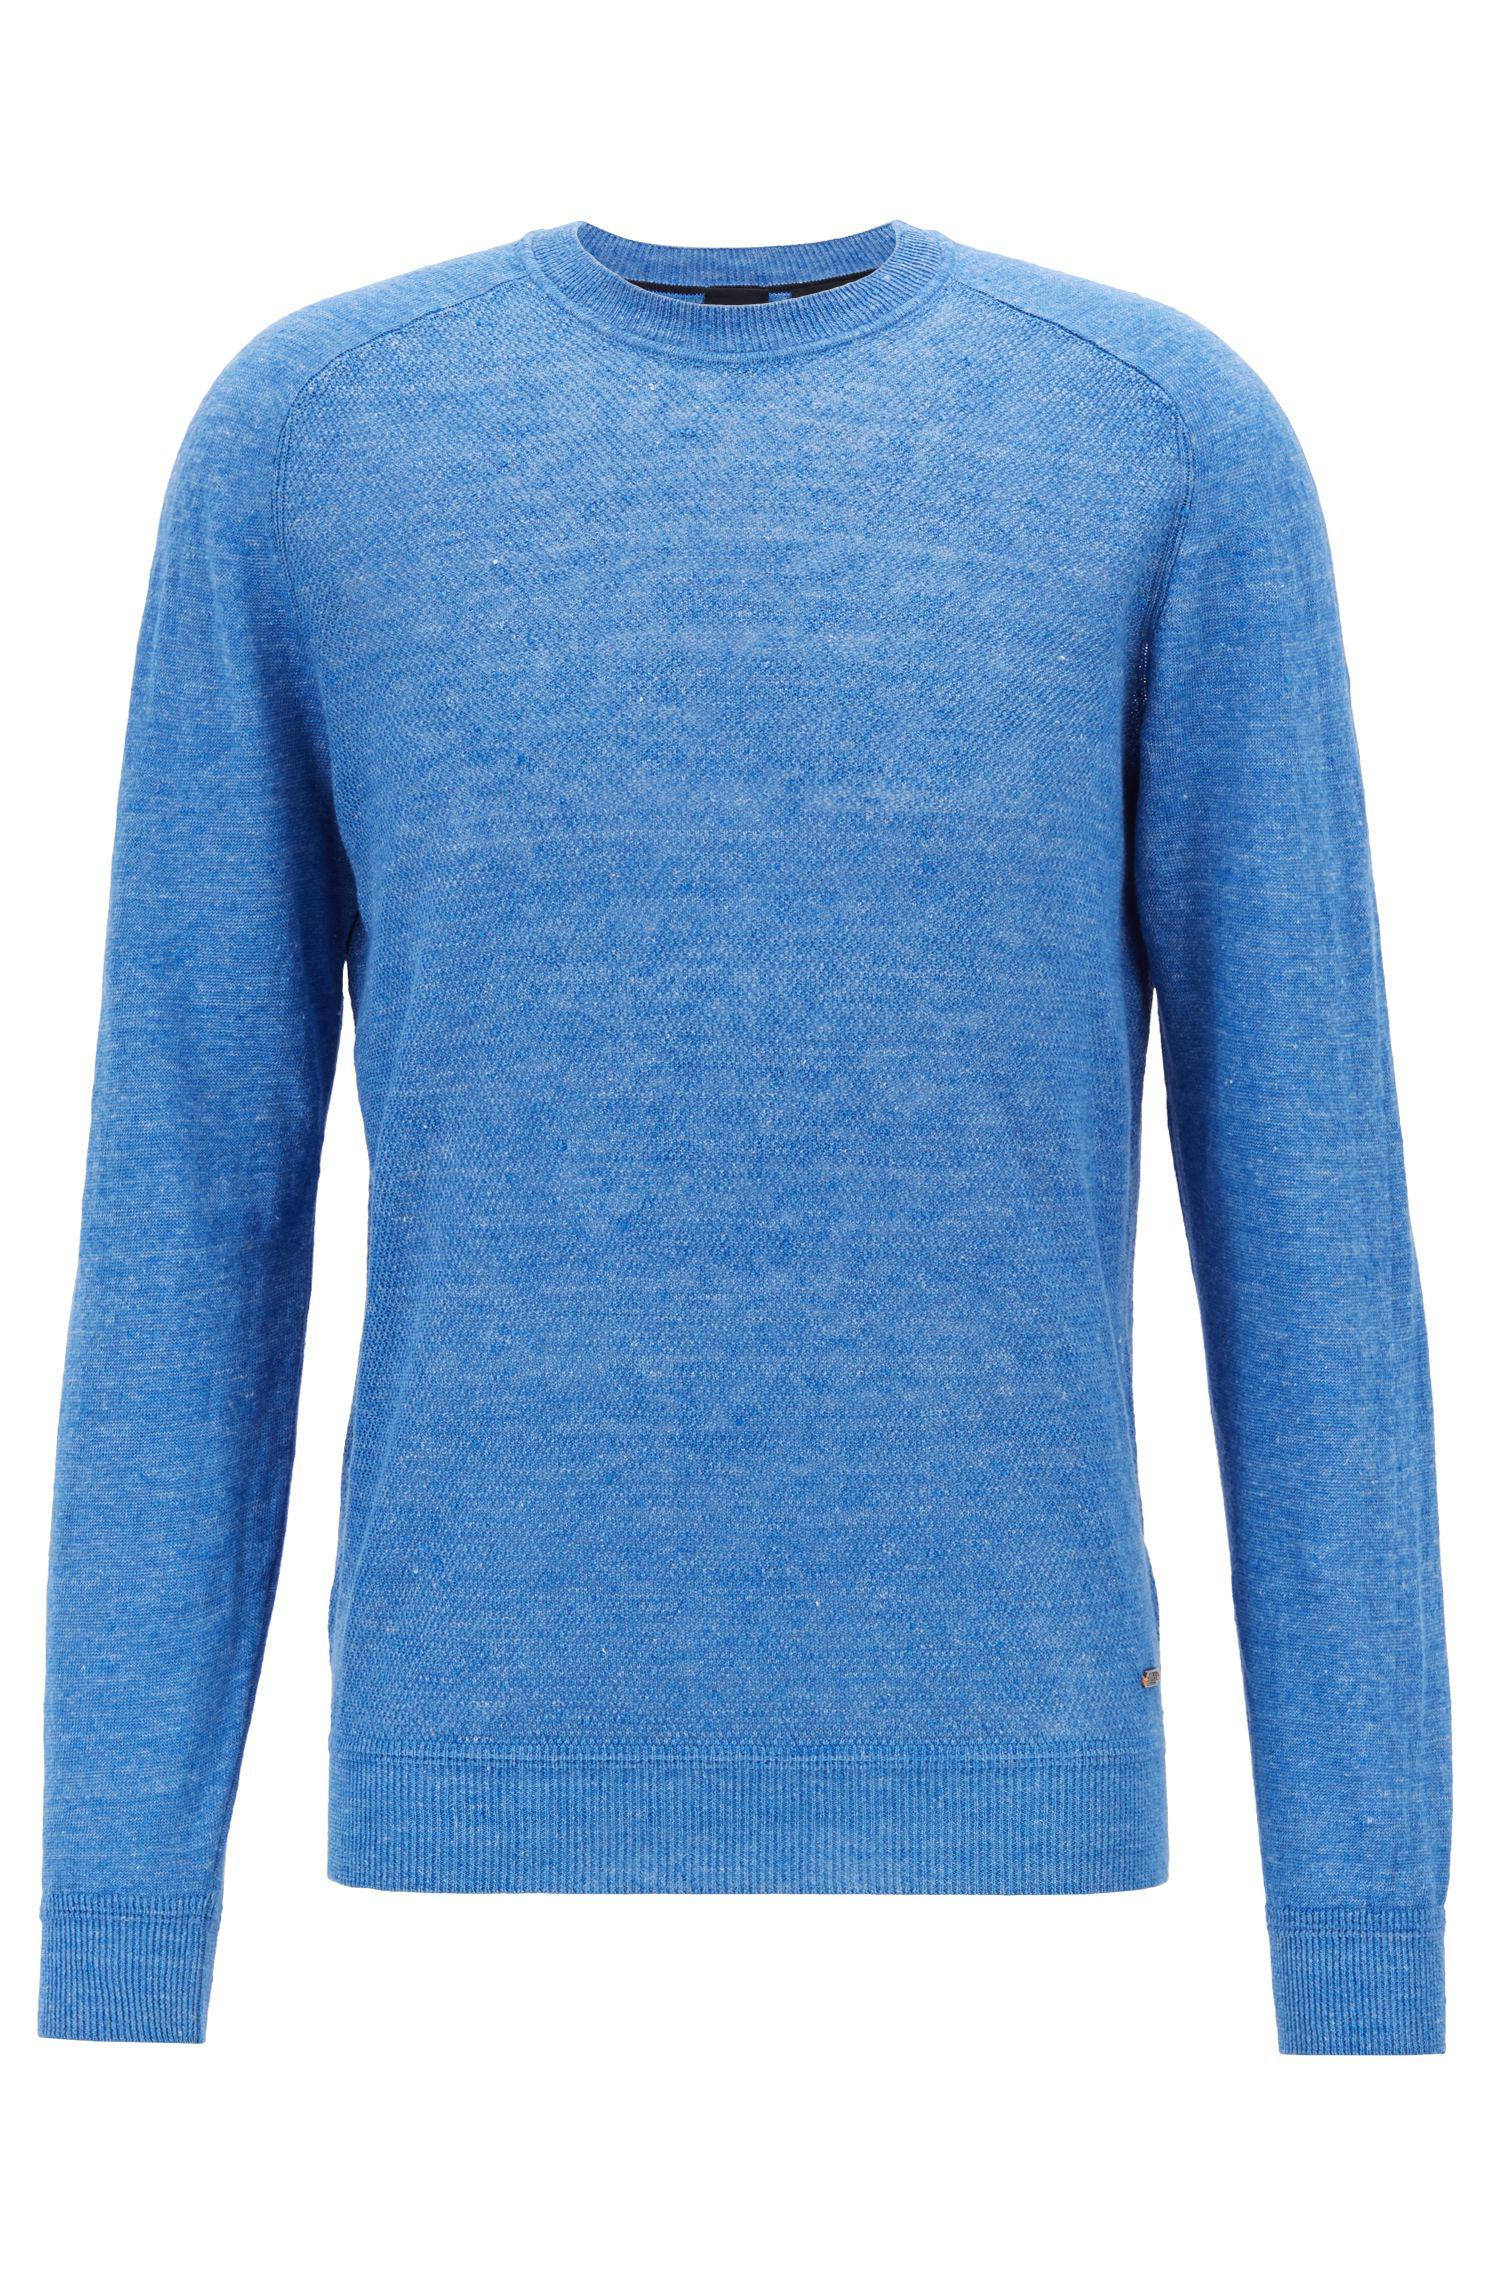 BOSS Knit Linen Sweater in Light/Pastel Blue (Blue) for Men - Lyst